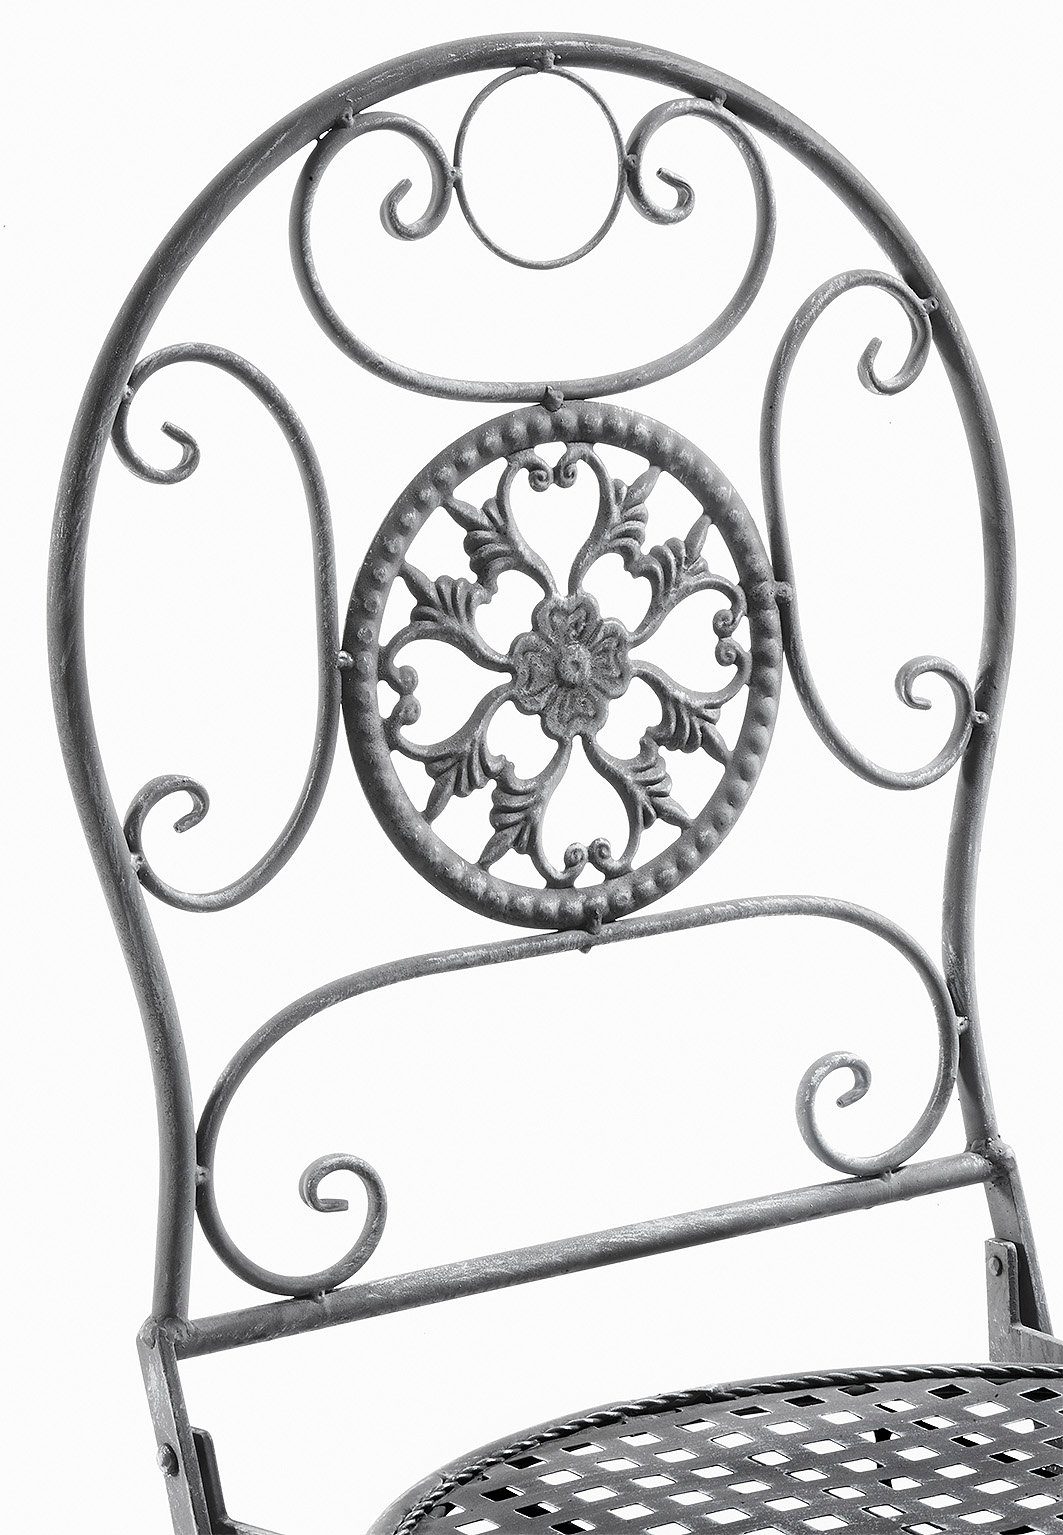 (Tisch Kobolo Metall aus 4-Fußstuhl St) 1 91cm Stuhl grau verfügbar,